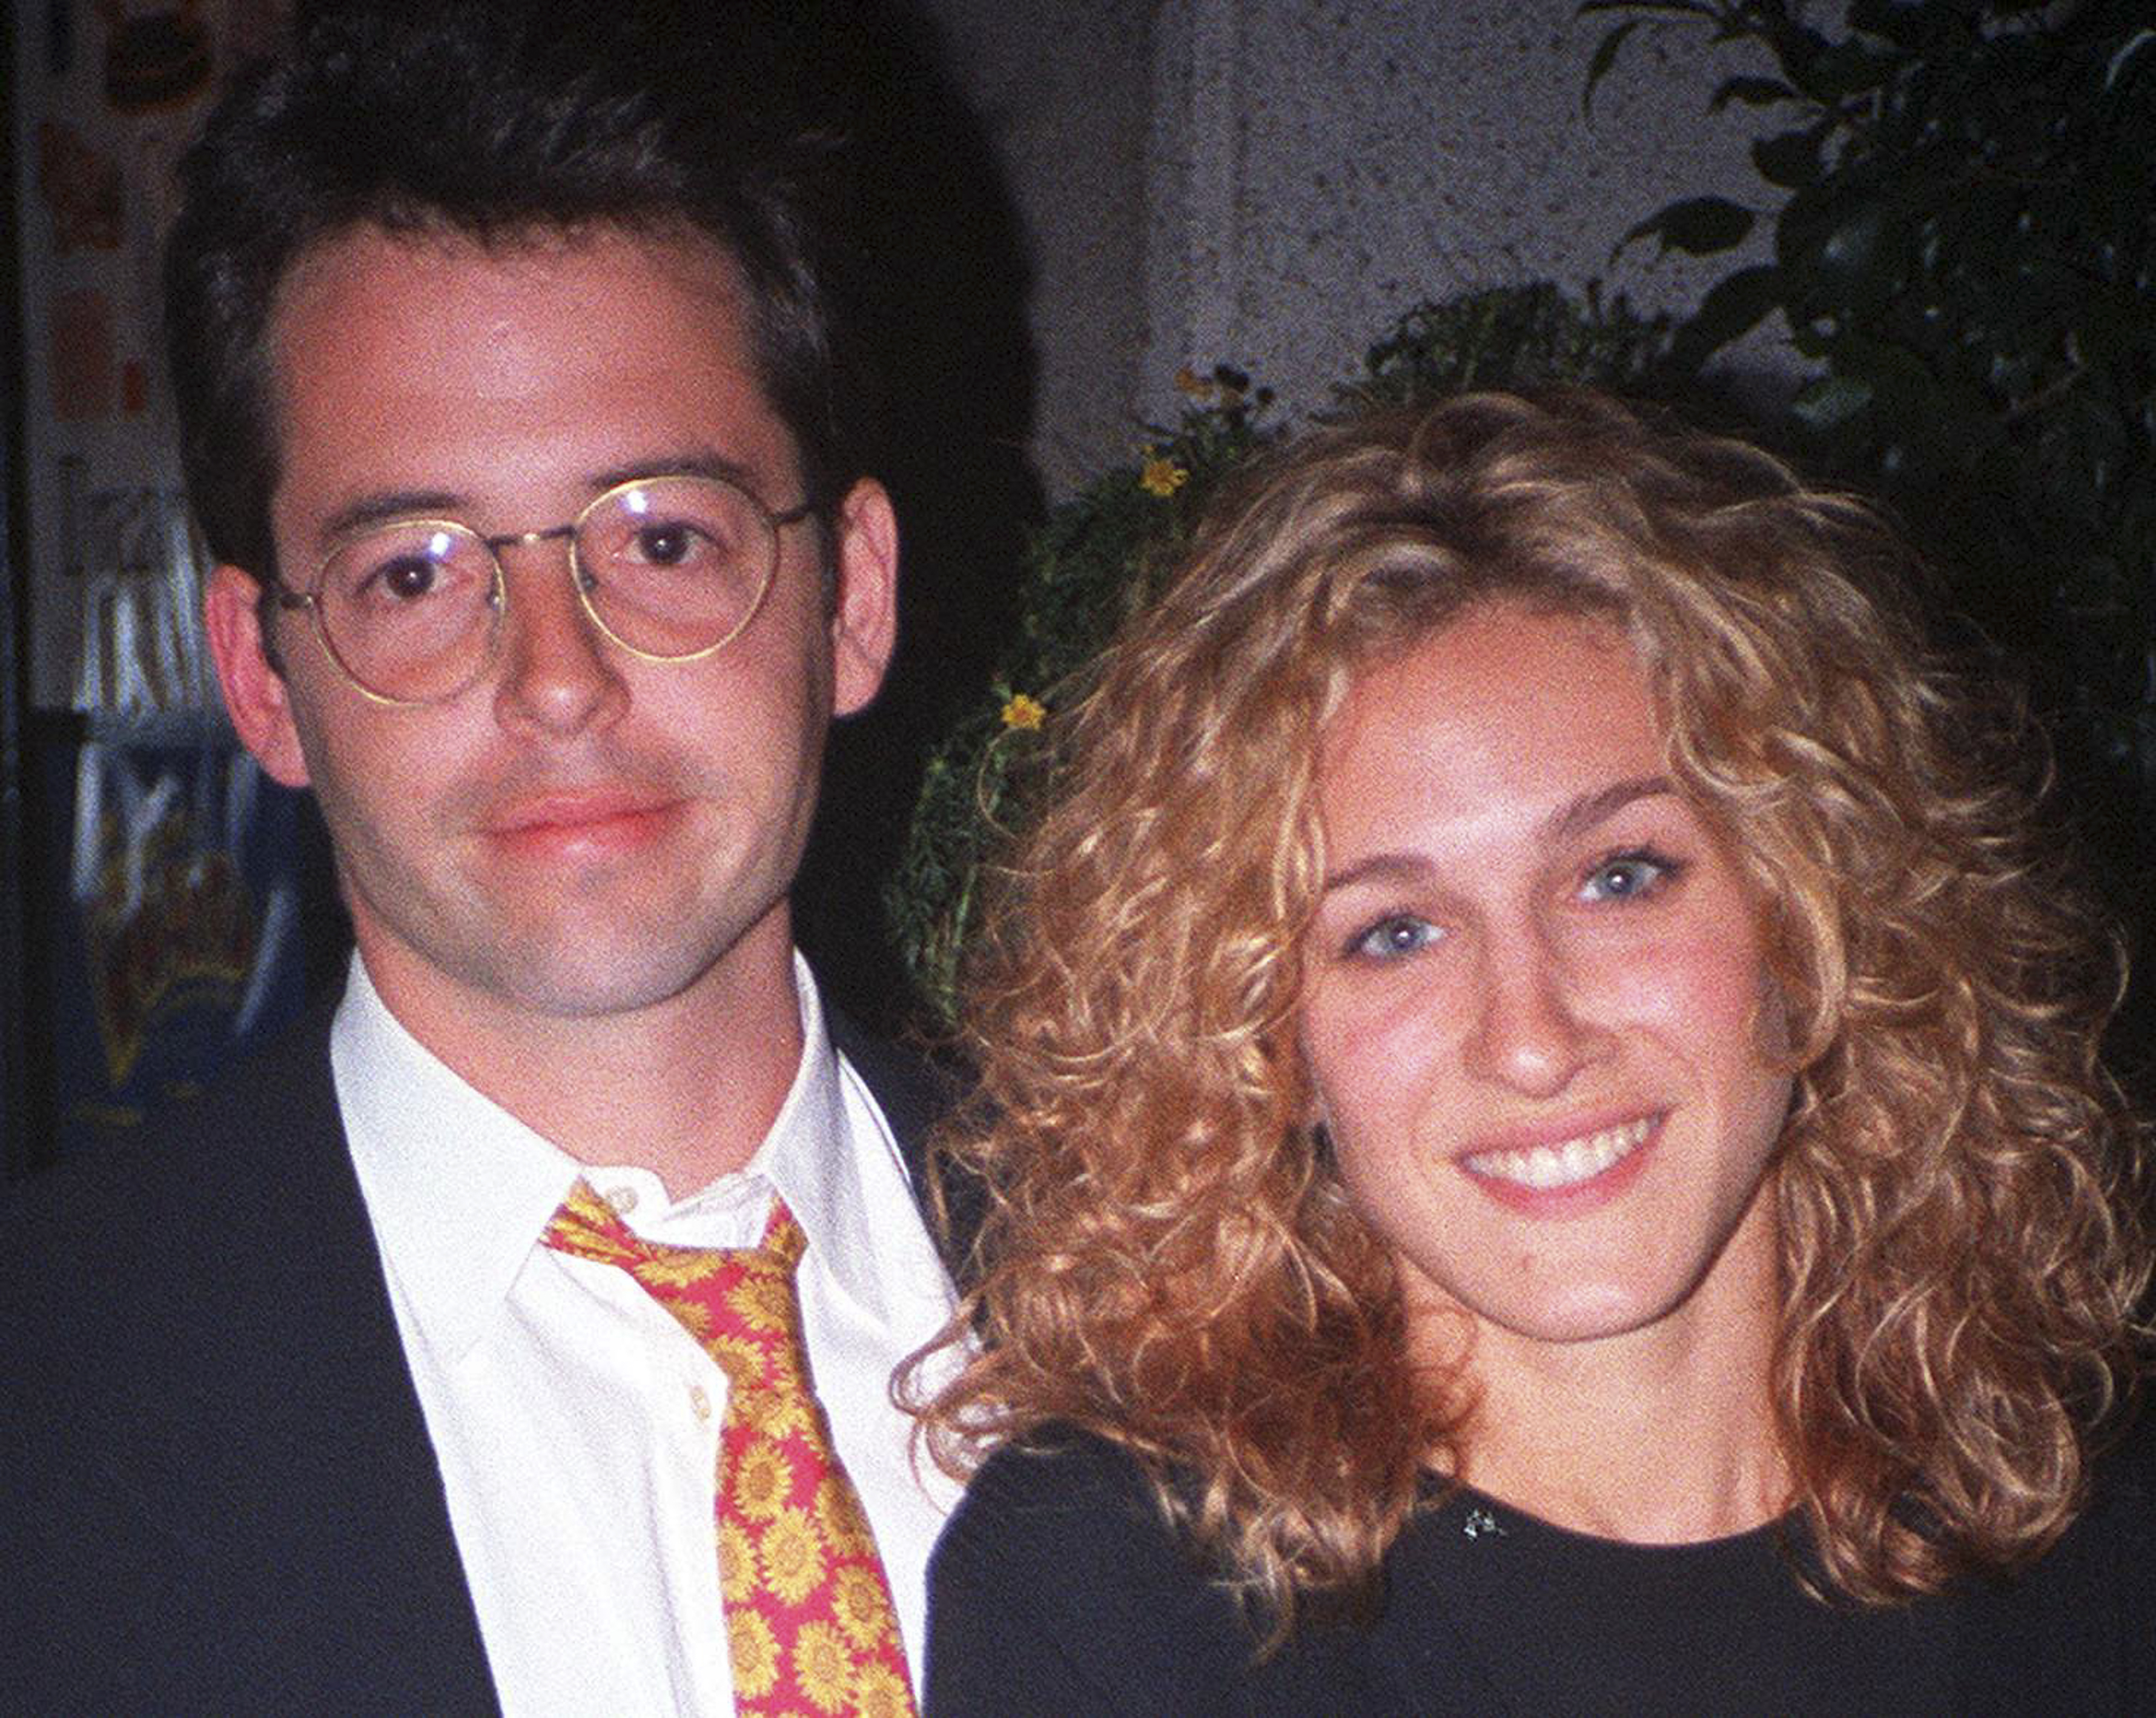 Der Schauspieler Matthew Broderick und Sarah Jessica Parker am 18. September 1993 | Quelle: Getty Images